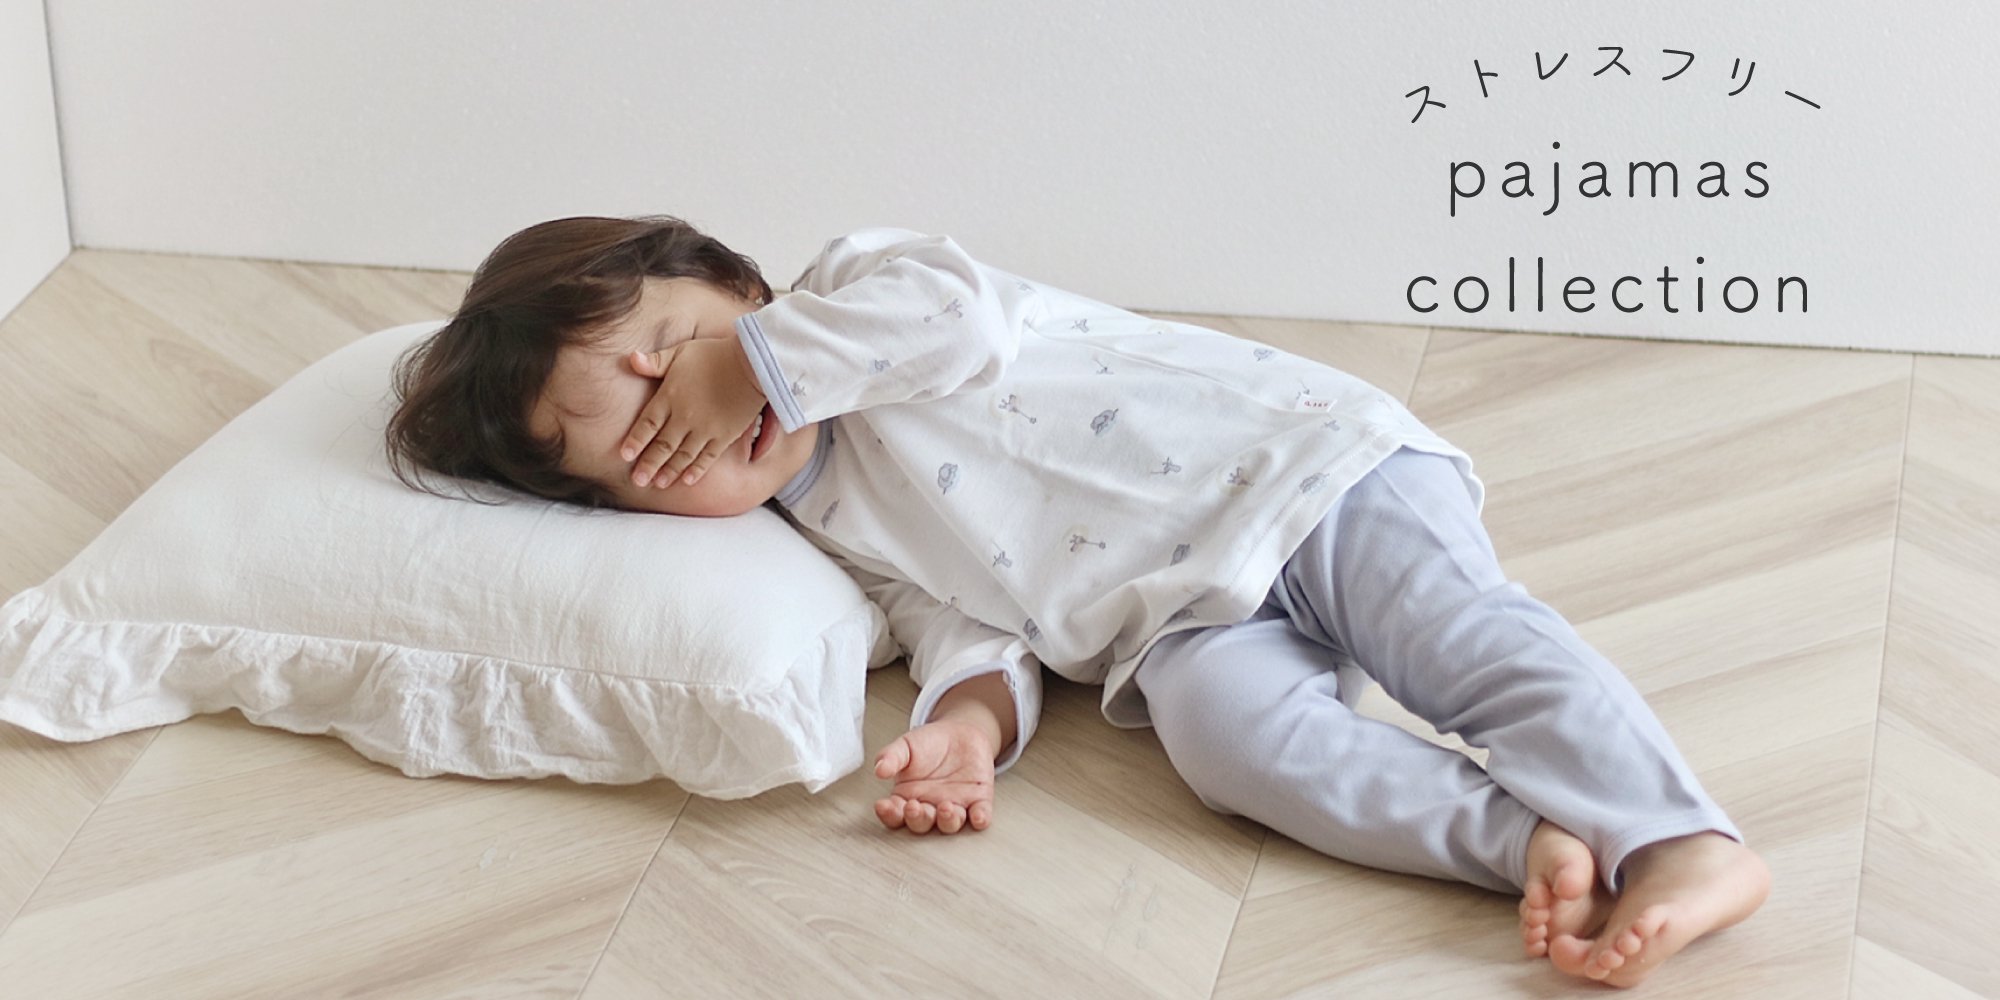 日本製の新生児肌着・ベビー服 PUPO（プーポ）